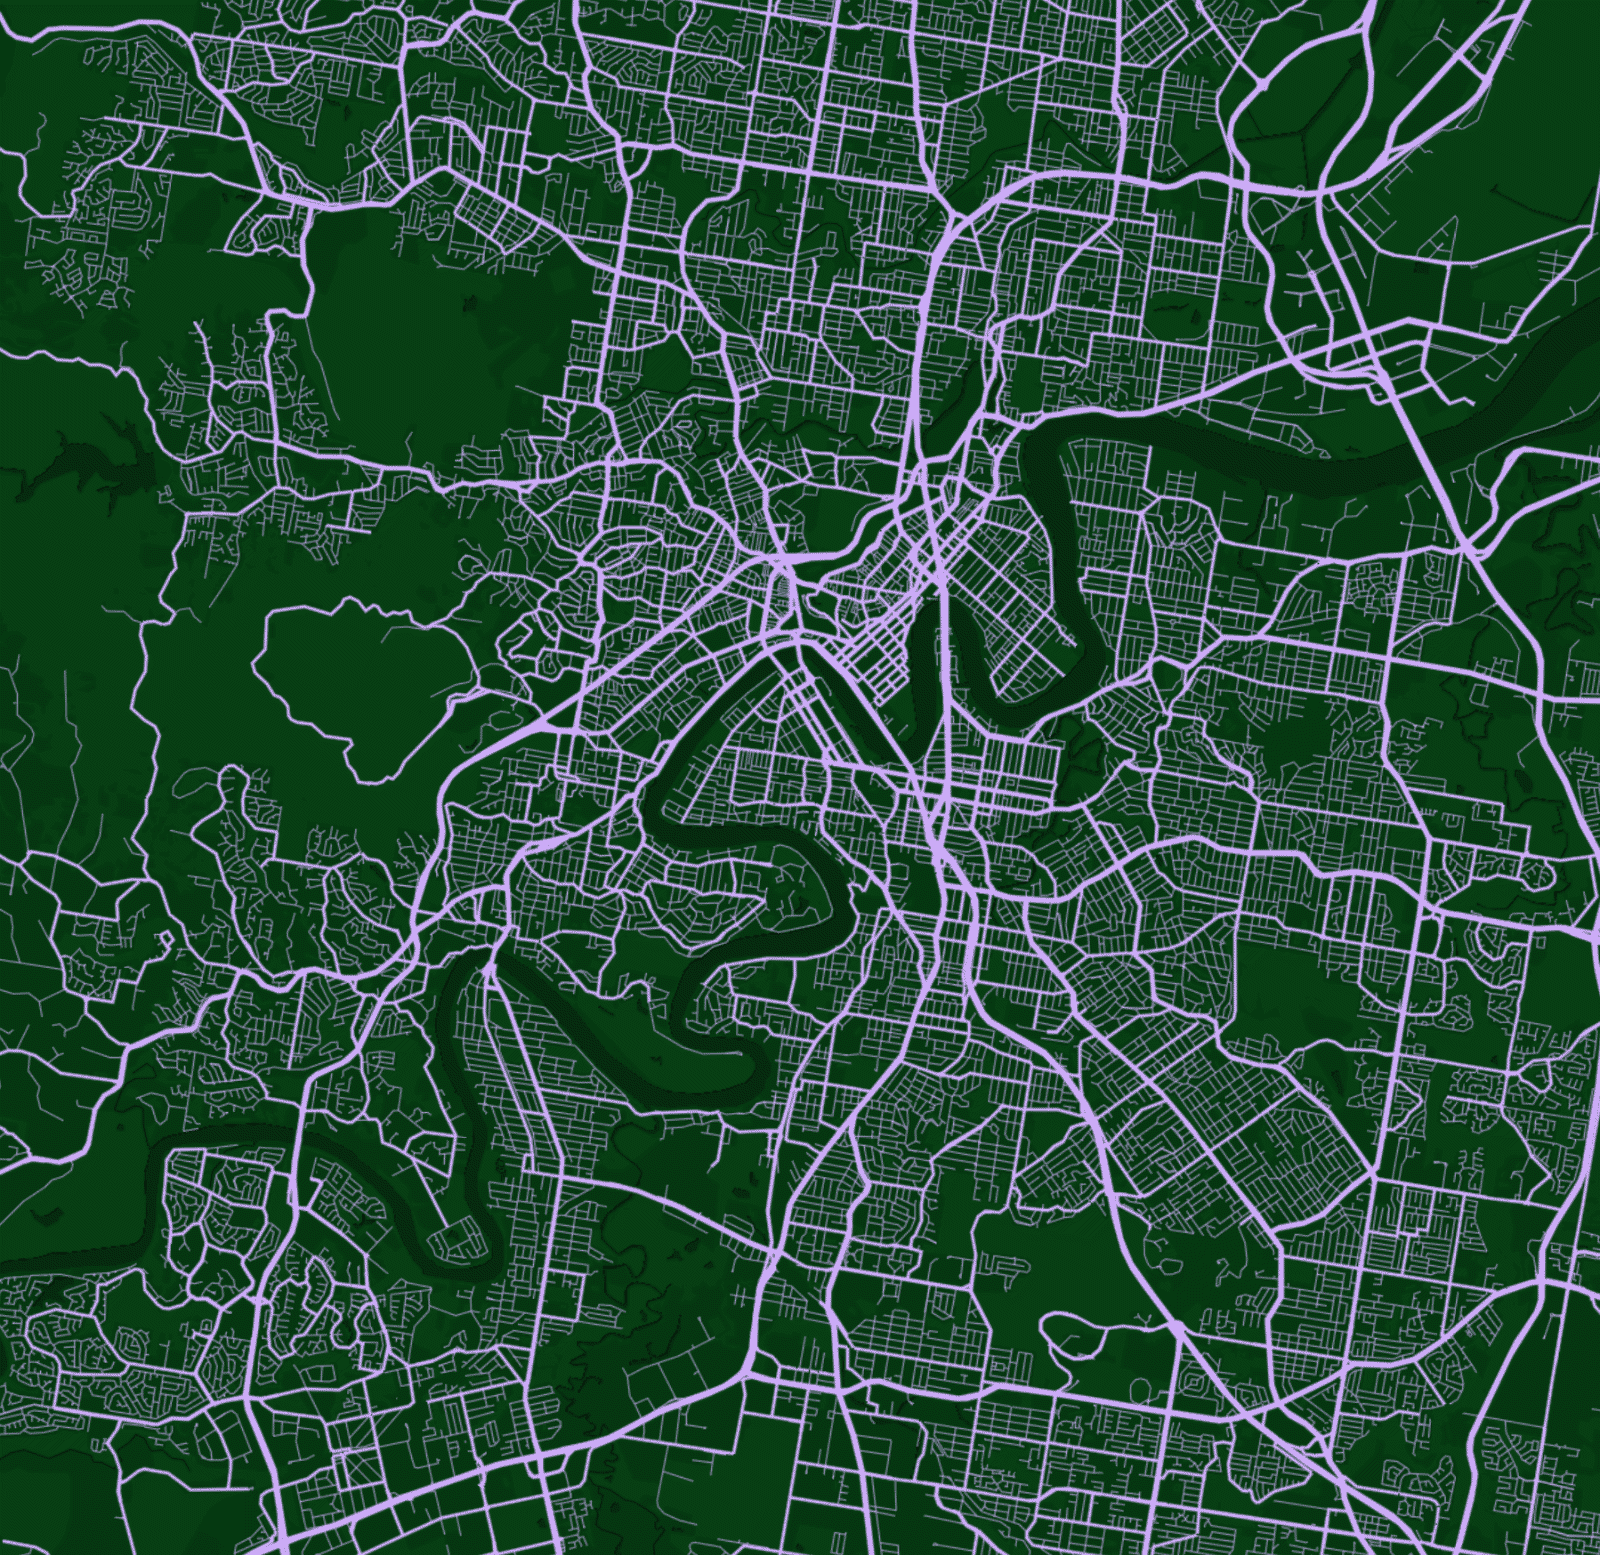 Map of Brisbane, AU